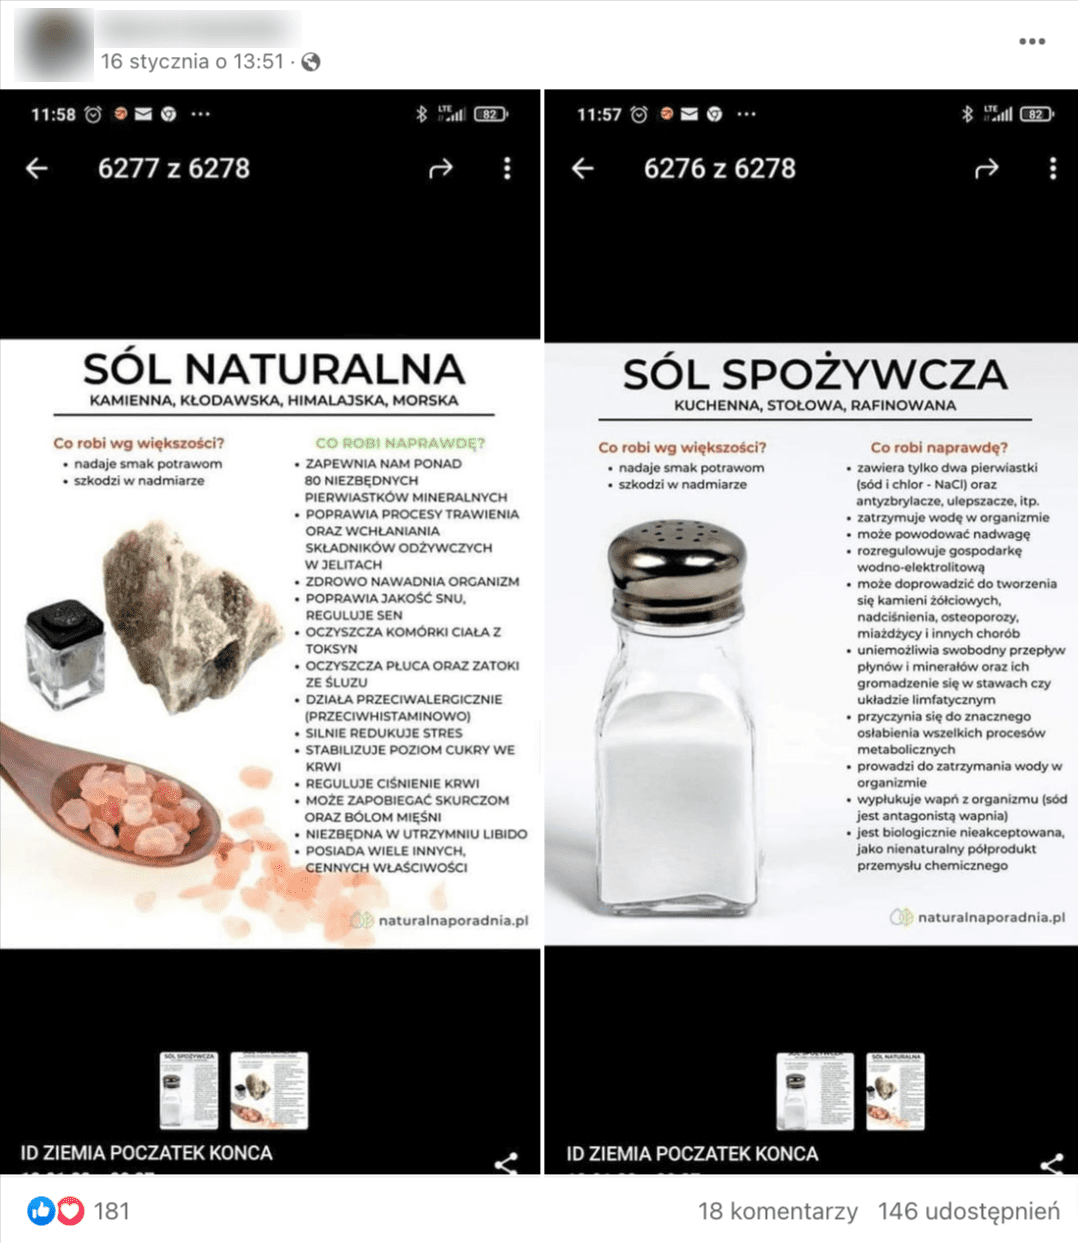 Zrzut ekranu przedstawiający porównanie cech soli „naturalnej” (kamiennej, kłodawskiej, himalajskiej, morskiej) oraz „spożywczej” (kuchennej, stołowej, rafinowanej)